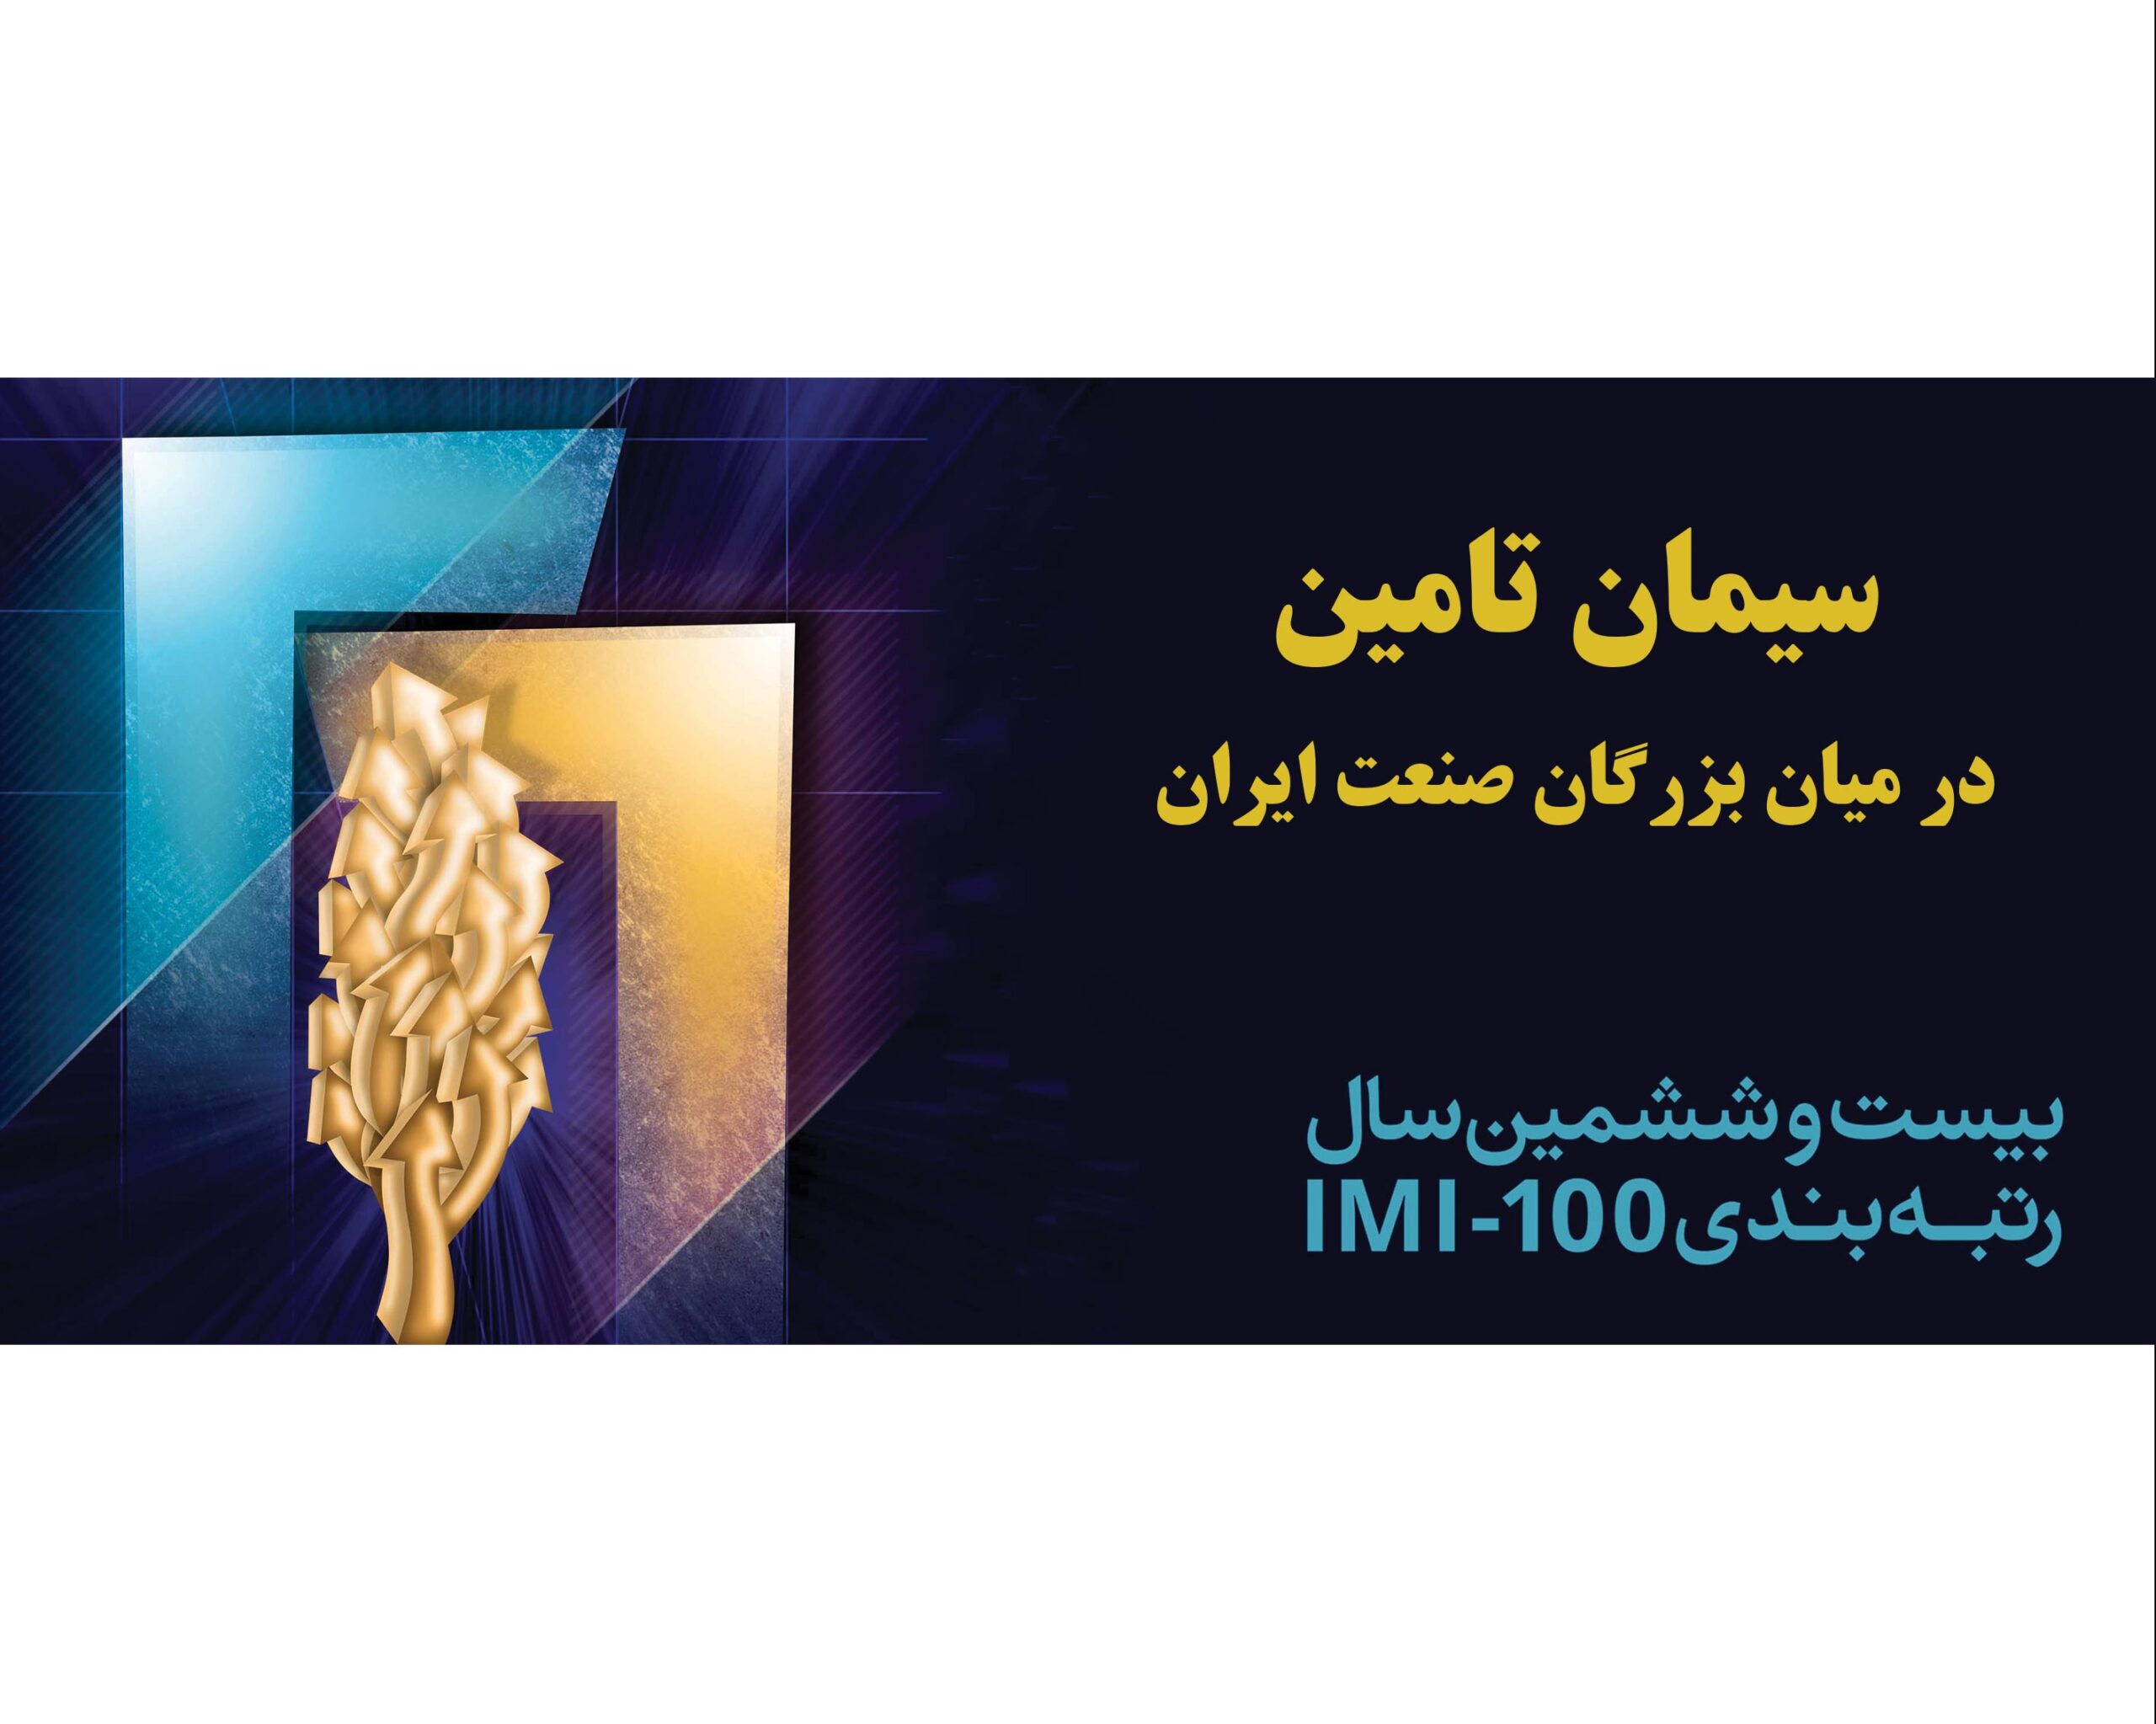 در همایش صد شرکت برتر ایران اعلام شد: سیمان تامین برترین شرکت صنعت سیمان کشور